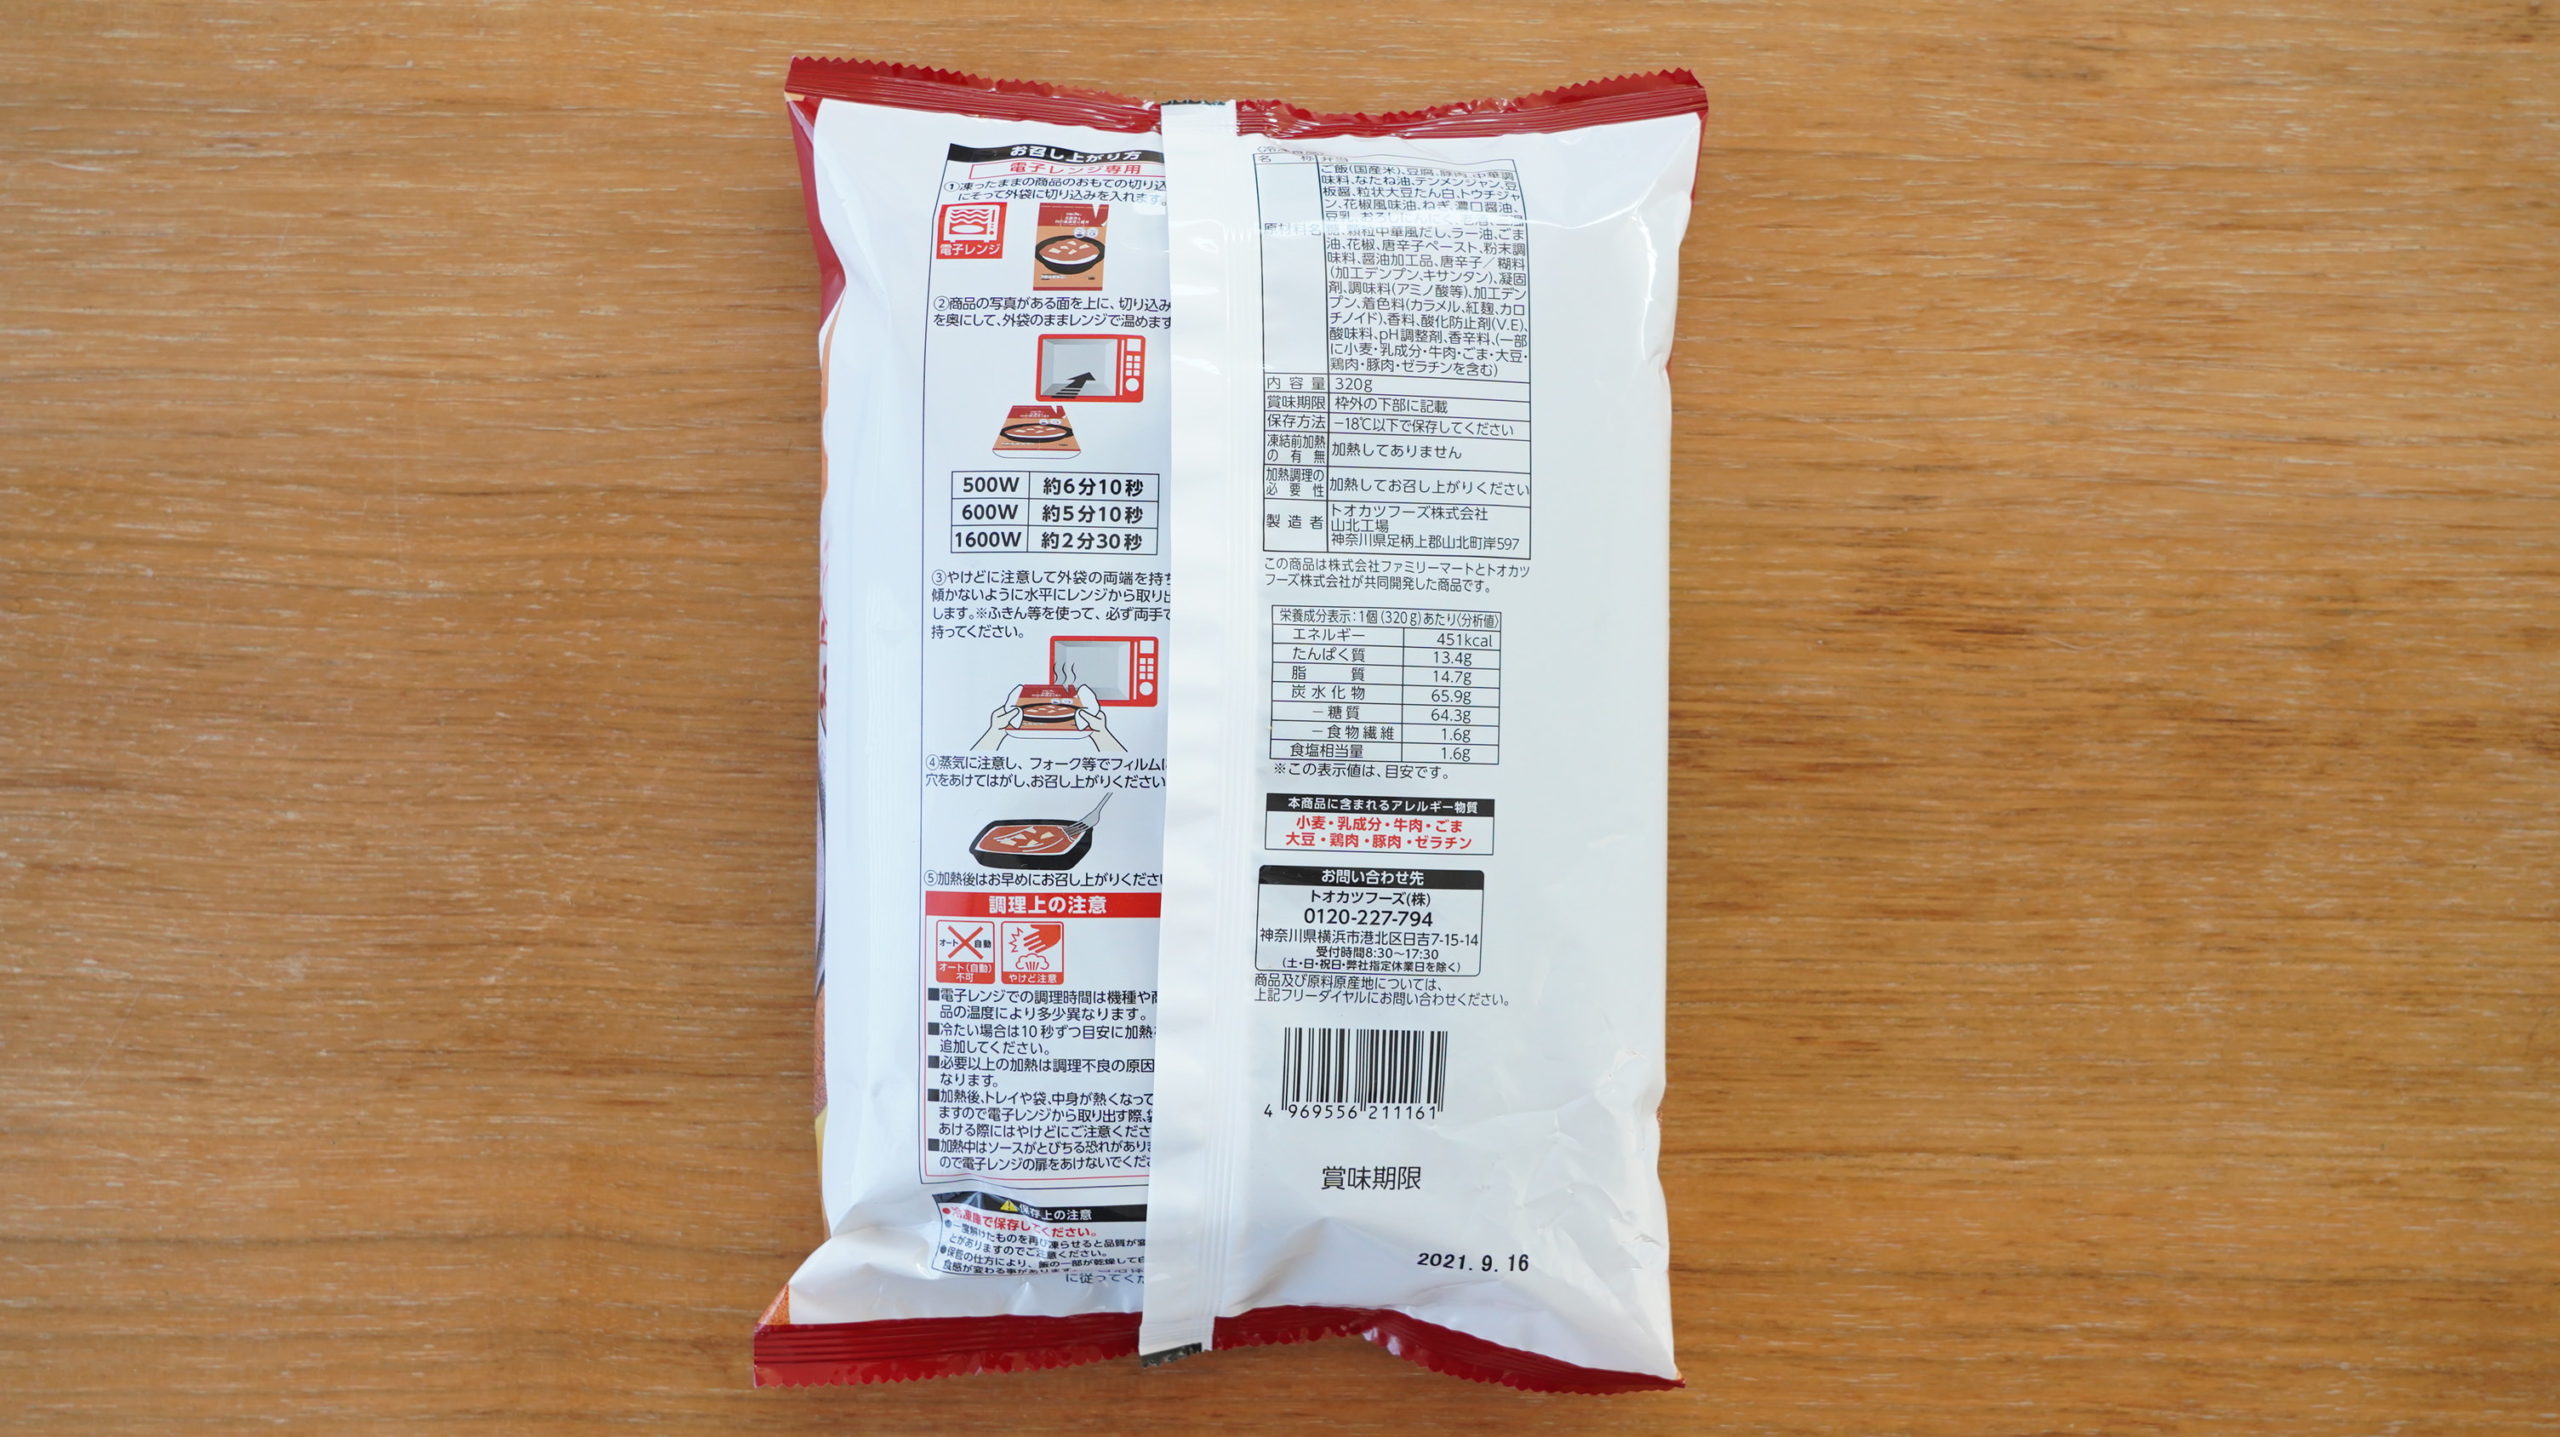 ファミリーマートの冷凍食品「花椒香る四川風麻婆豆腐丼」のパッケージ裏面の写真